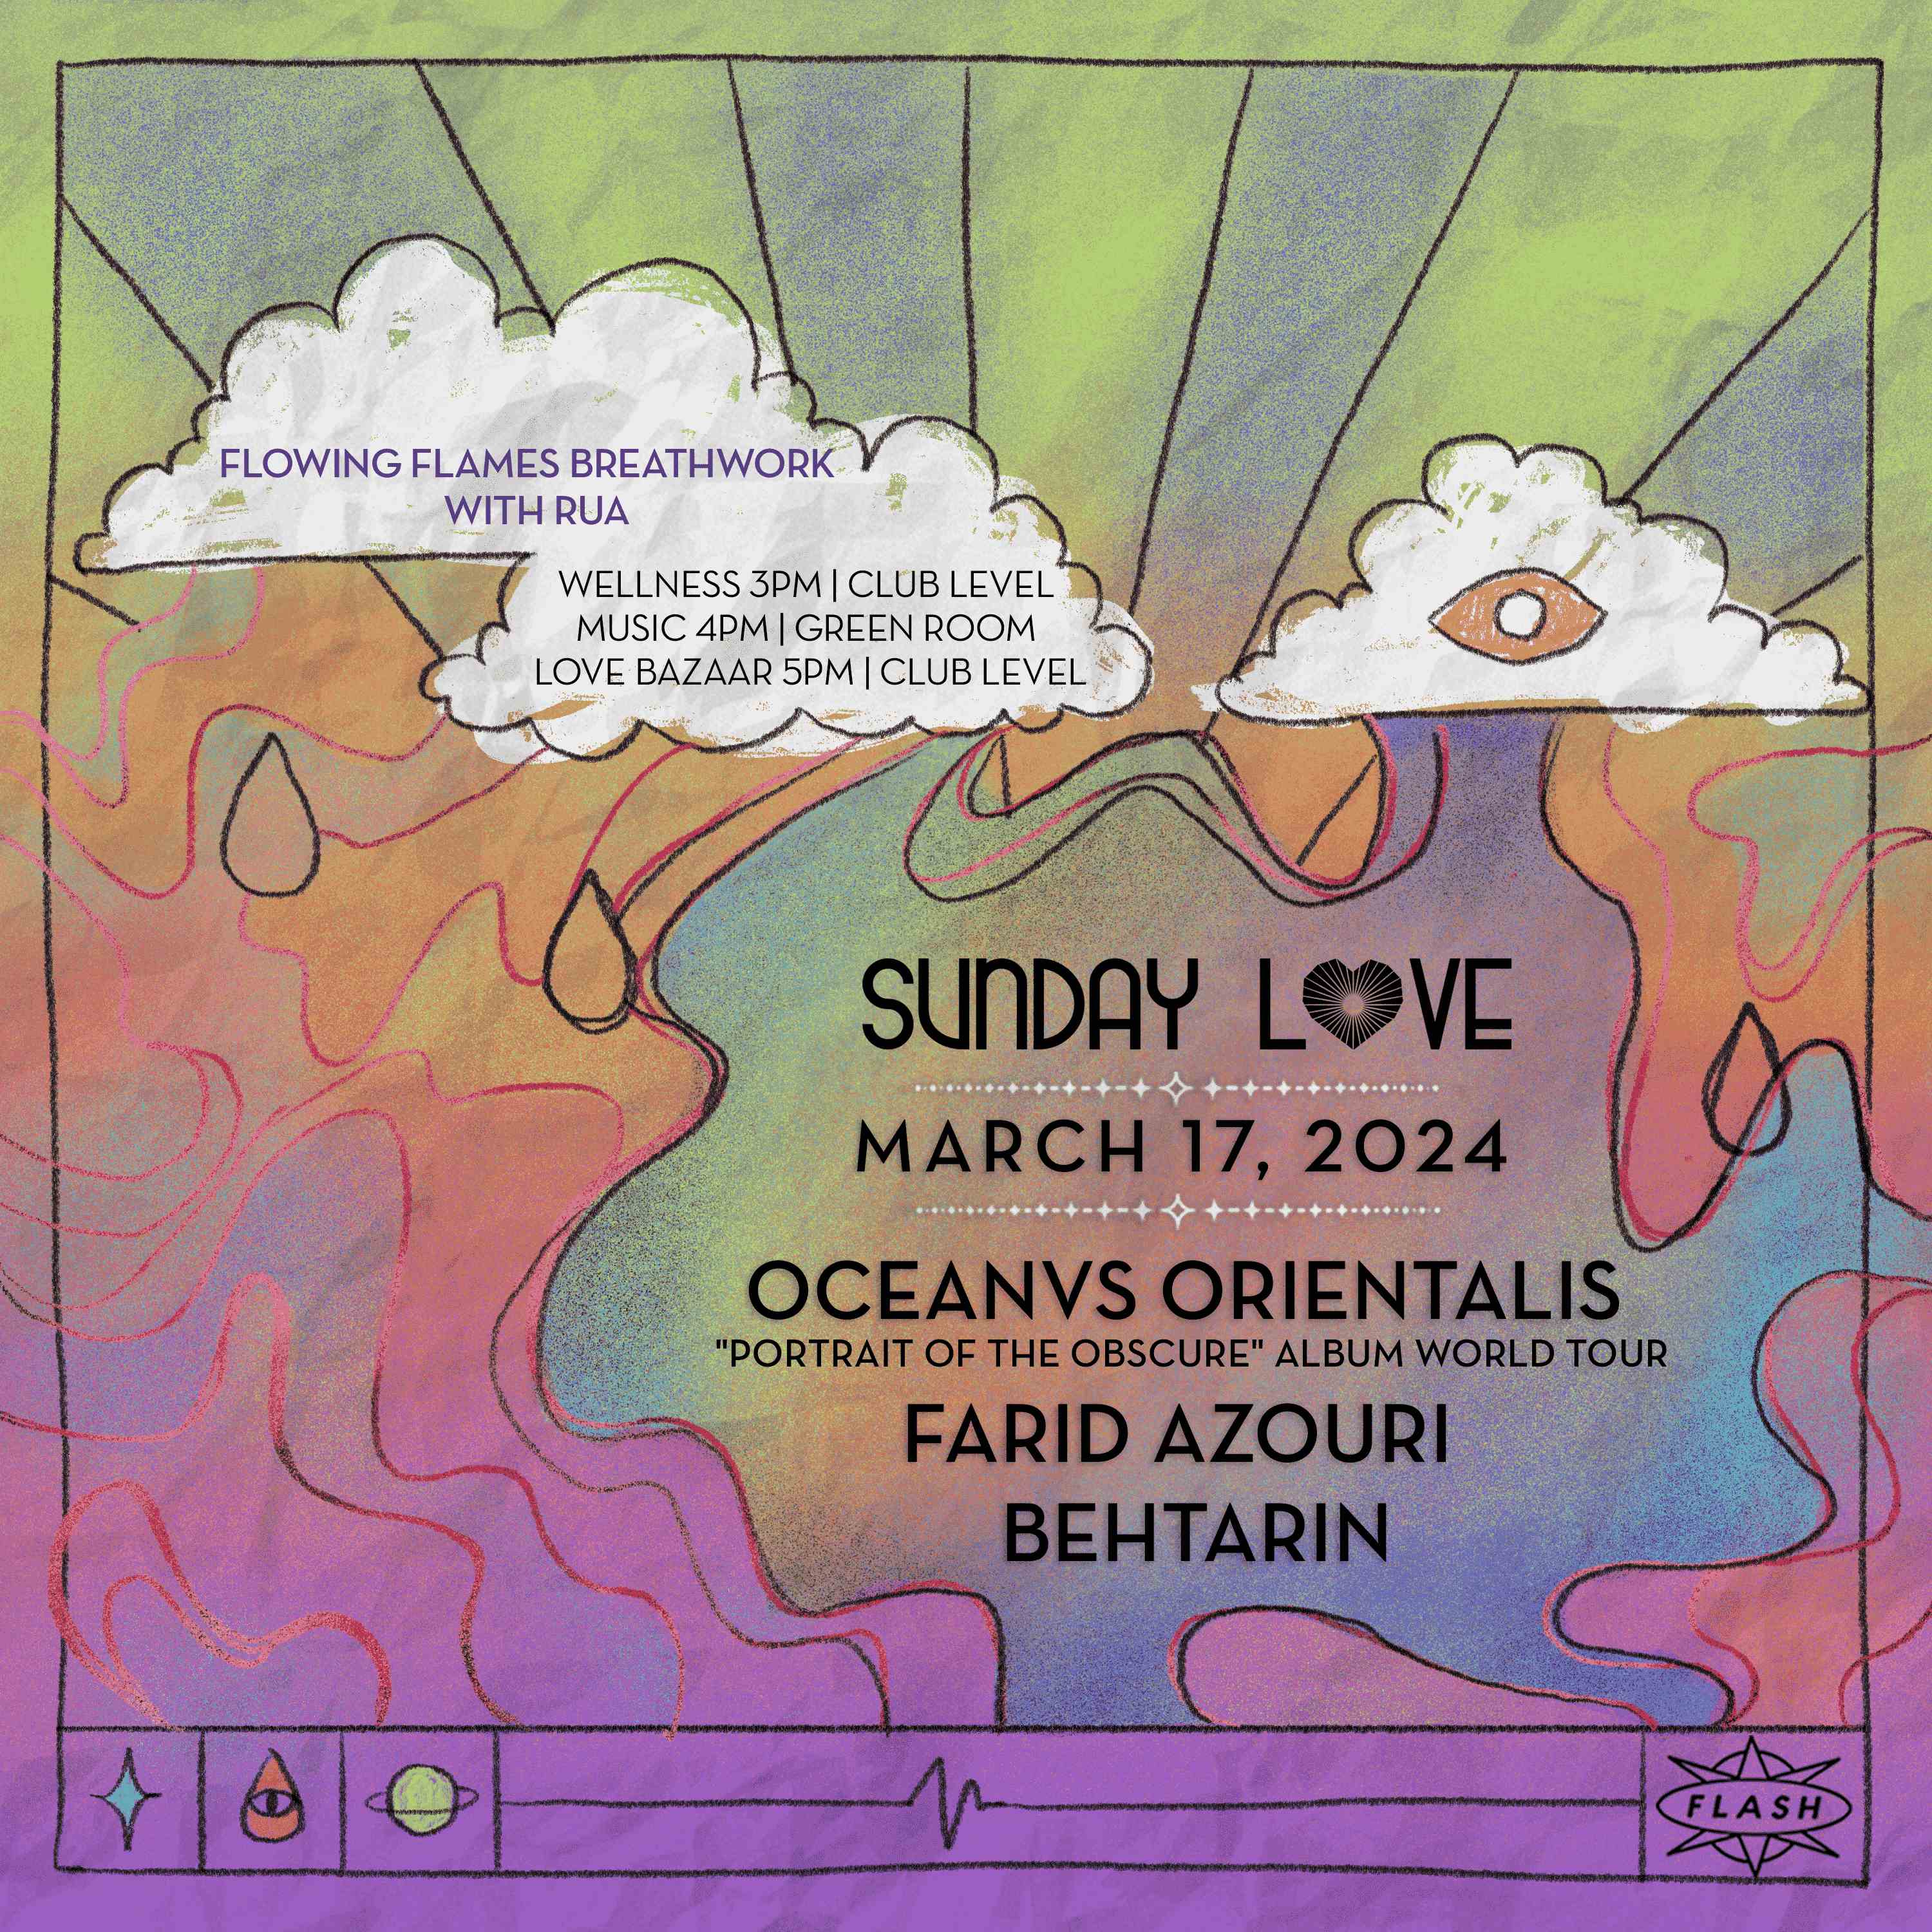 Sunday Love: Oceanvs Orientalis - Farid Azouri - BehTarin event flyer